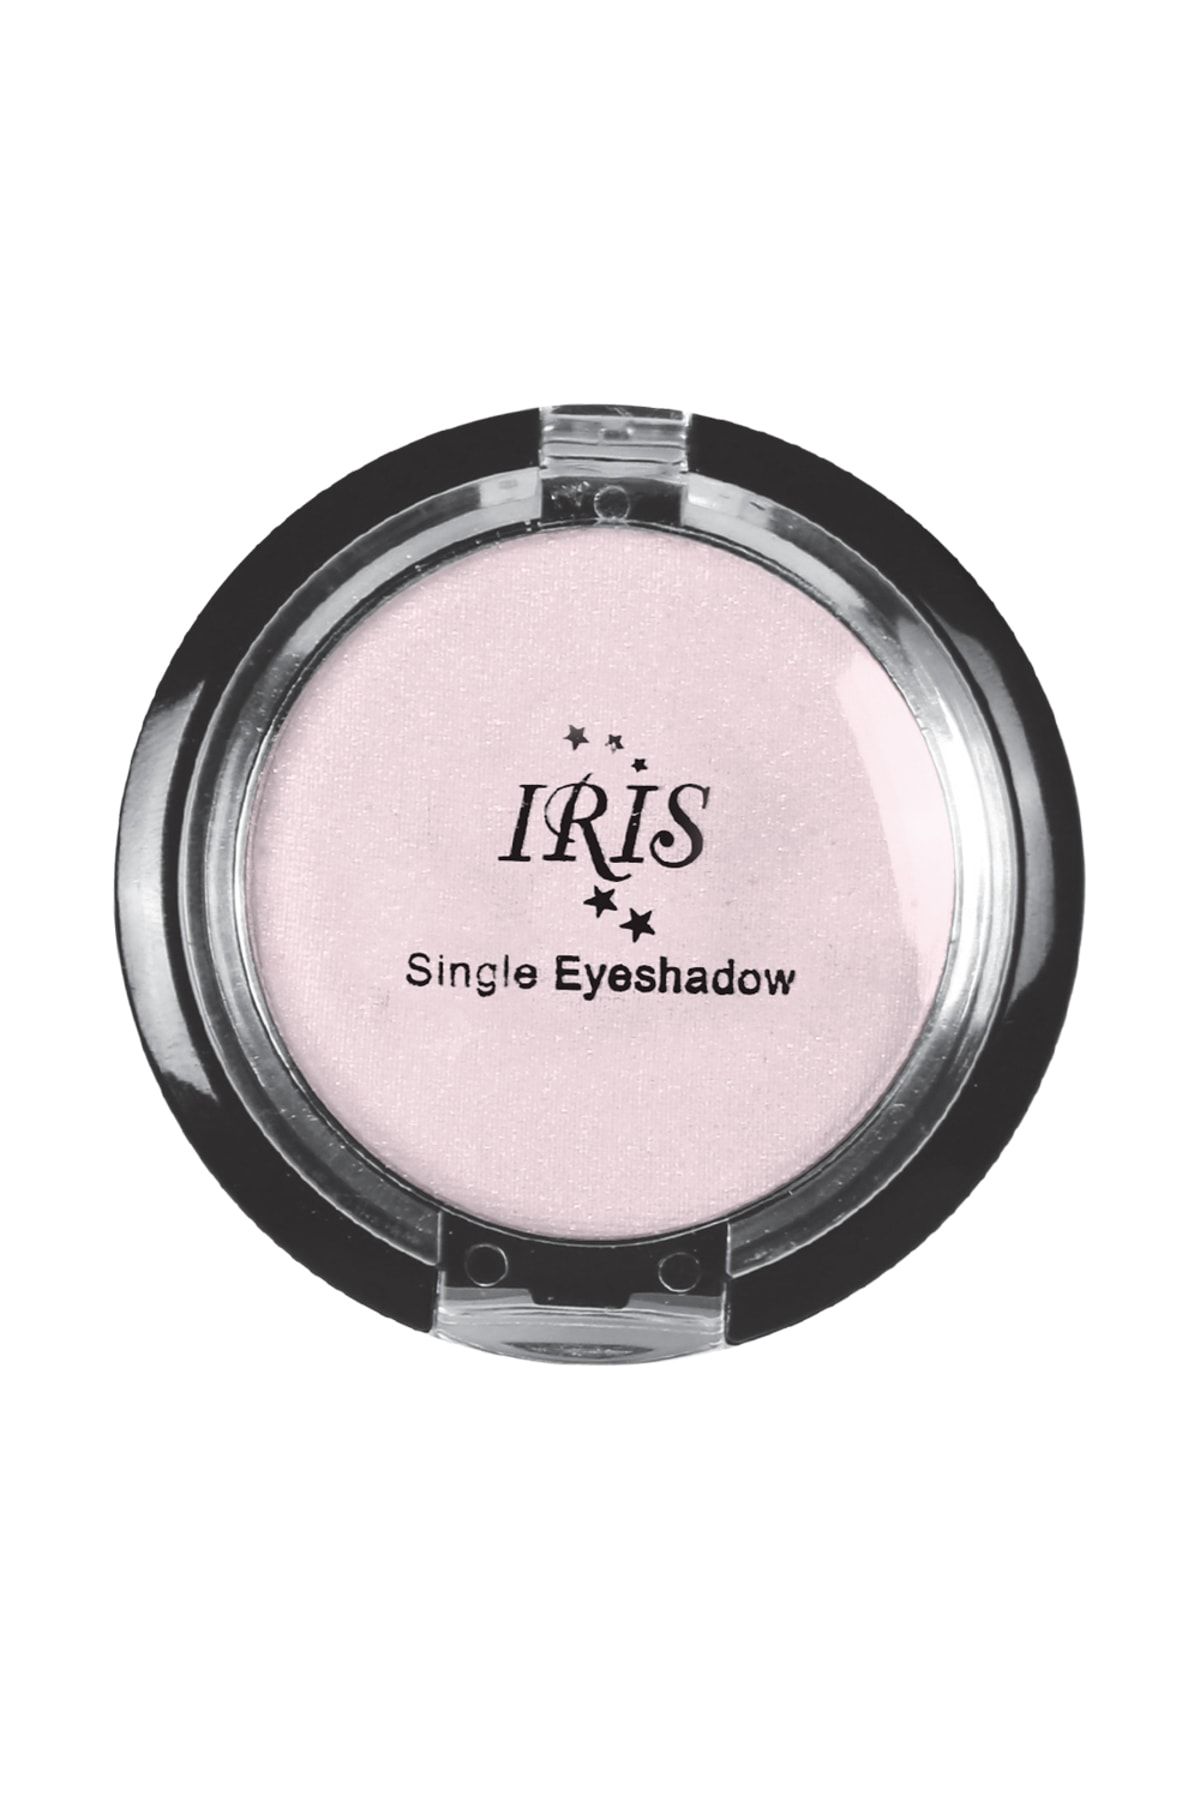 IRIS Göz Farı - Single Eyeshadow 002 8699195992690